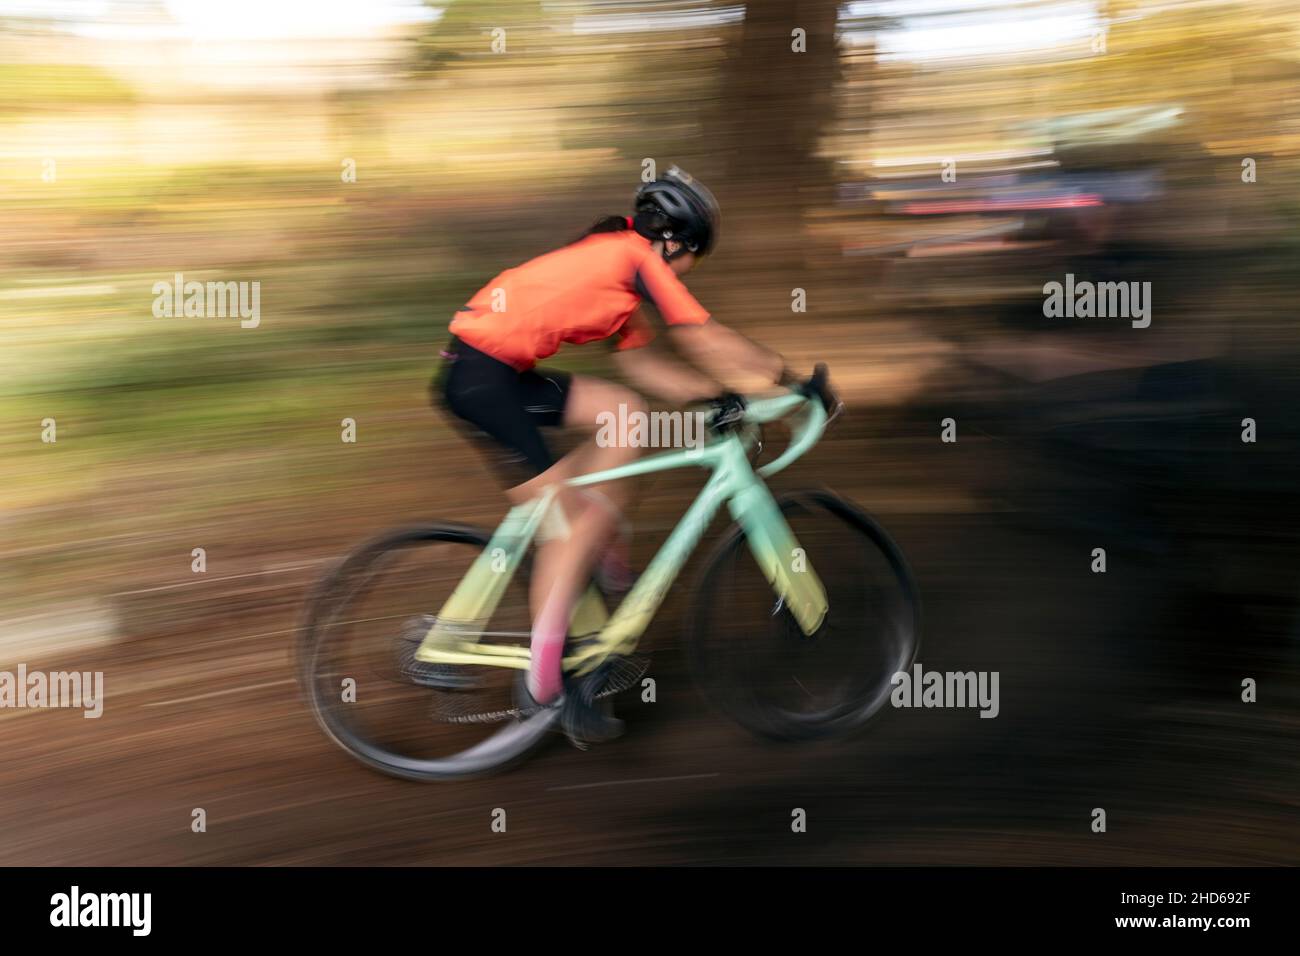 WA20622-00....WASHINGTON - Pan Action eines Radsportfahrers auf dem eingleisigen Abschnitt eines Frauencross-Rennens. Stockfoto